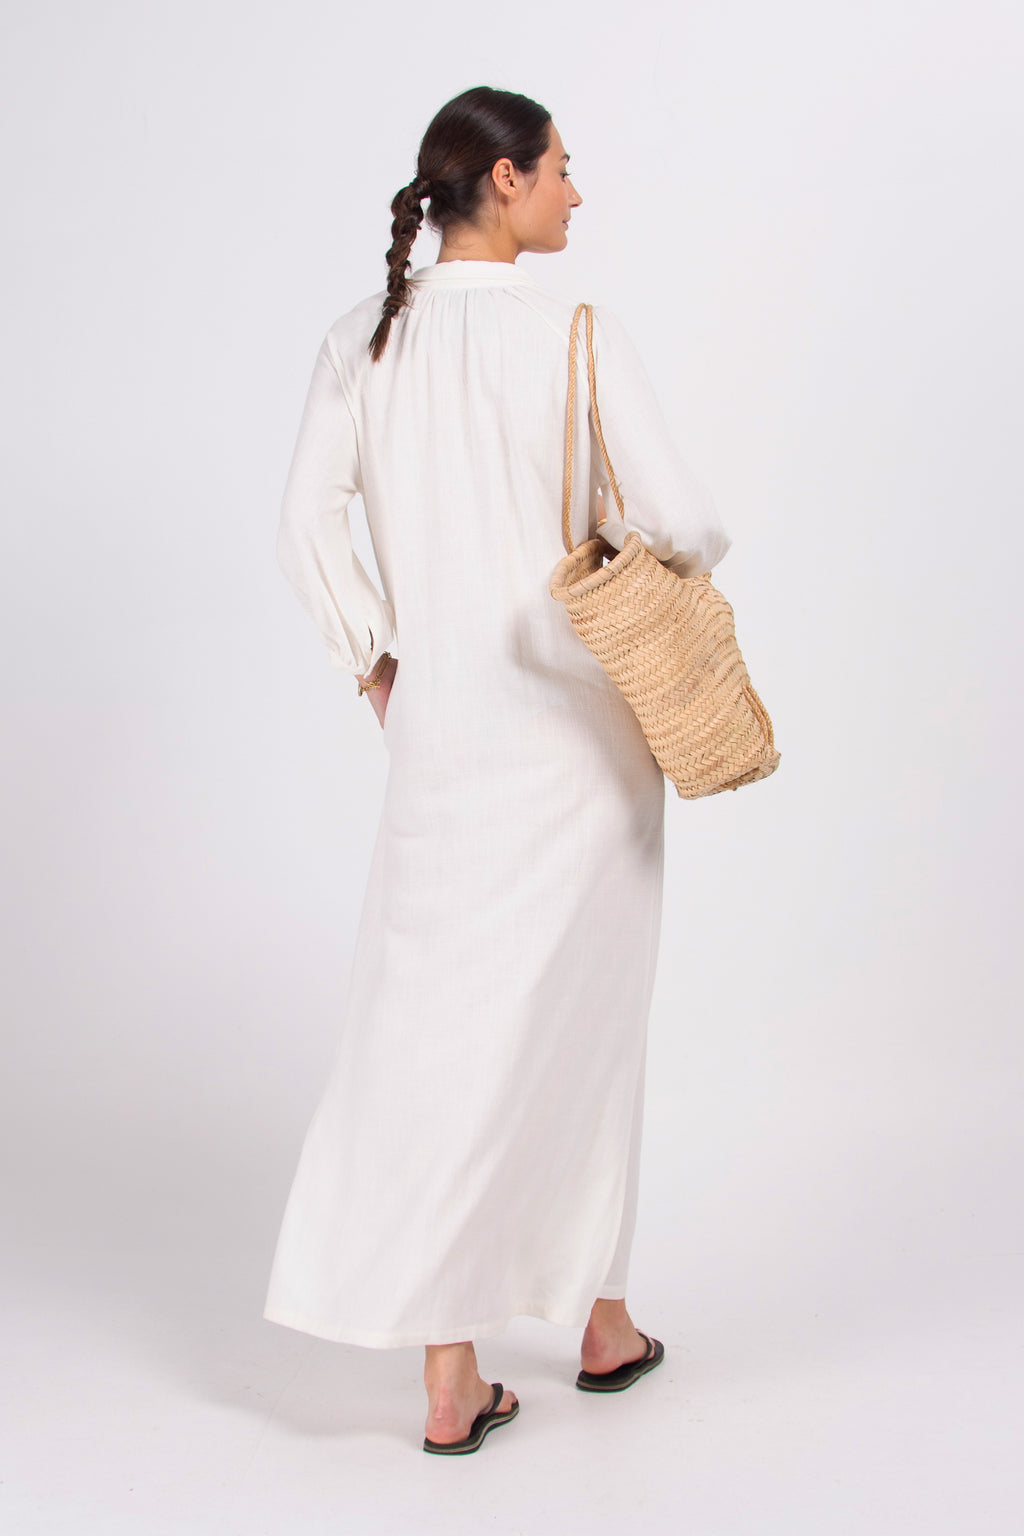 Dysis white linen long dress